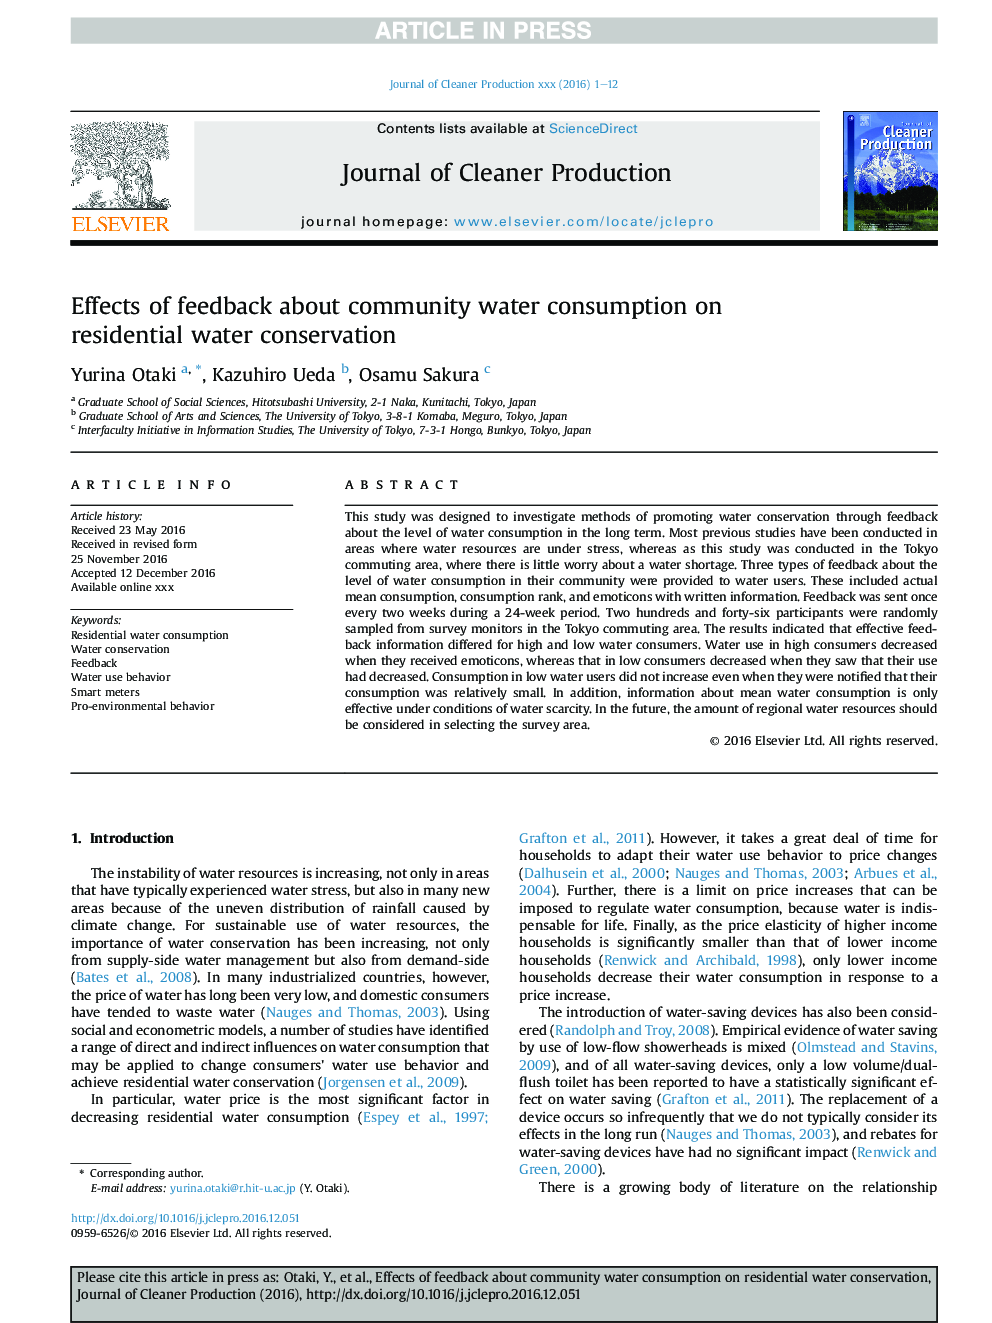 تأثیر بازخورد در مورد مصرف آب مصرفی جامعه در حفاظت از آبهای مسکونی 